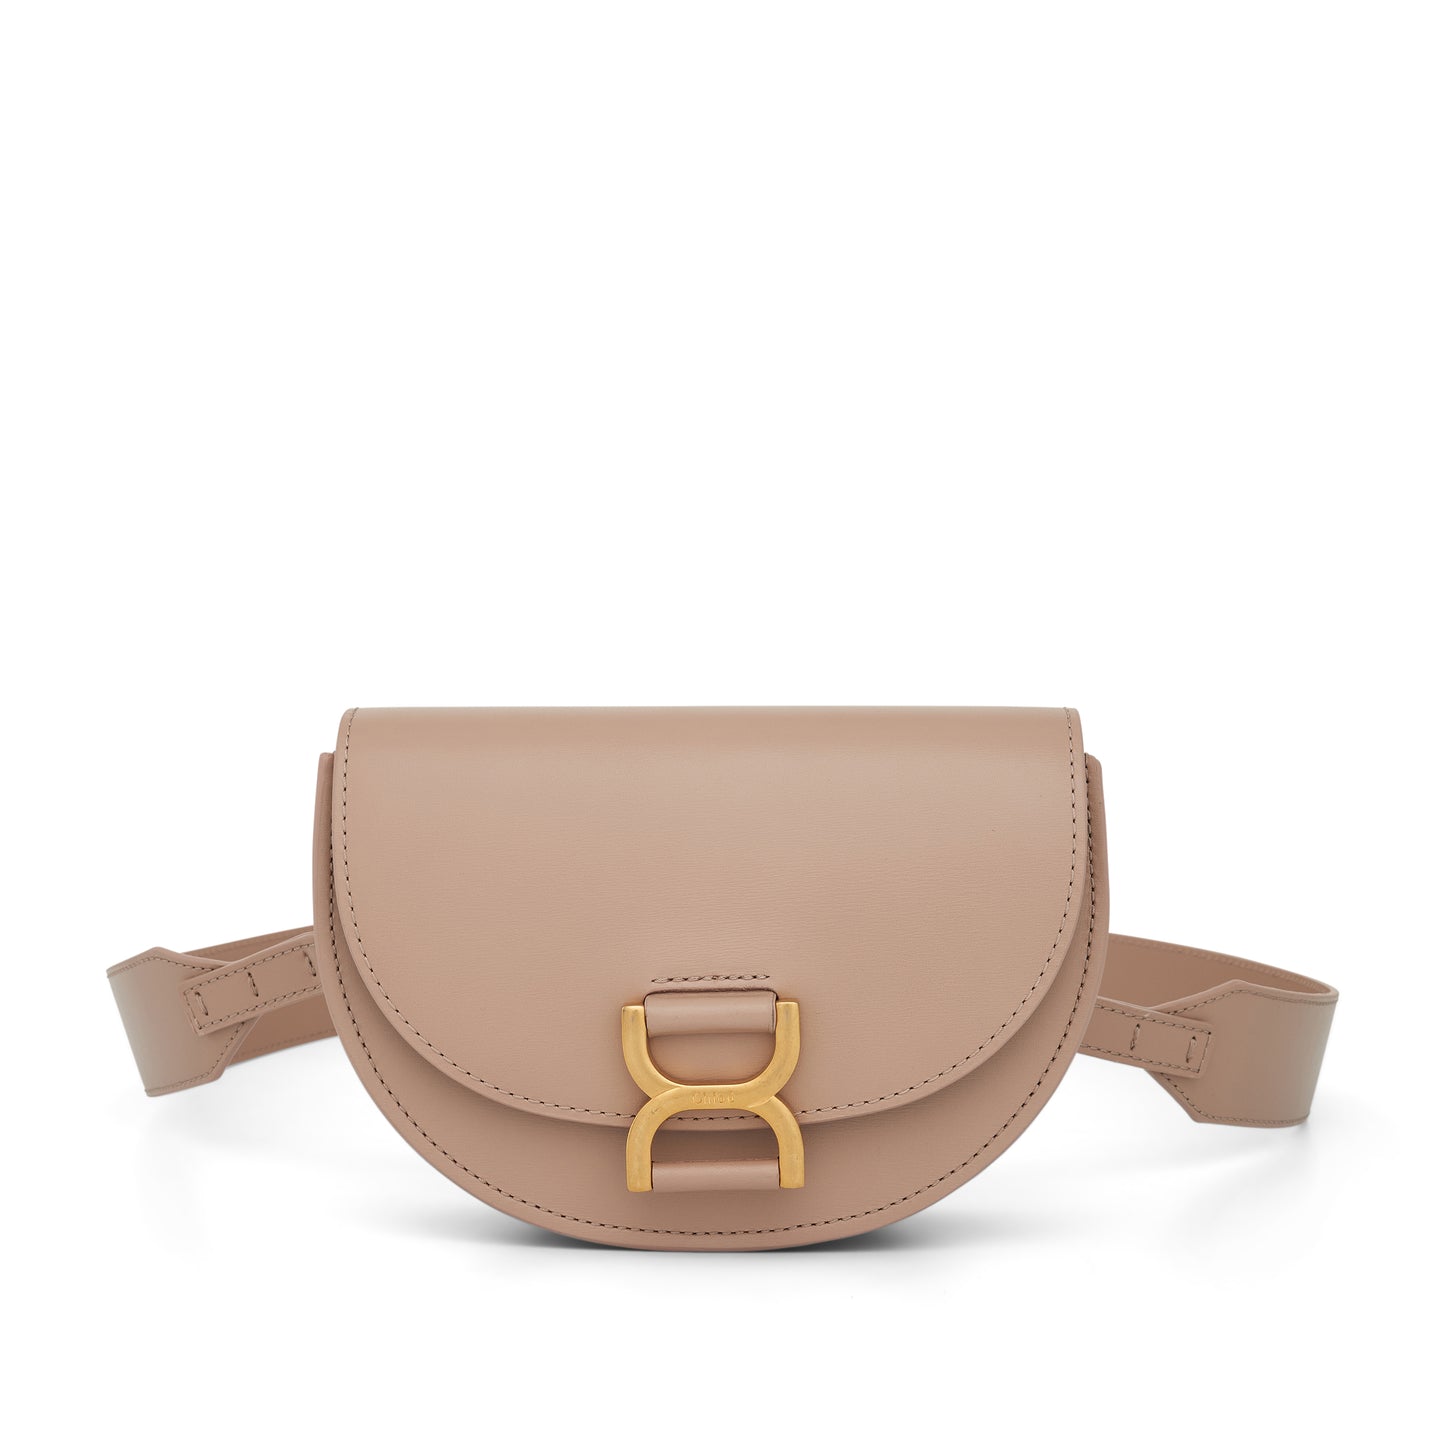 Mini Marcie Leather Shoulder Bag in Nomad Beige